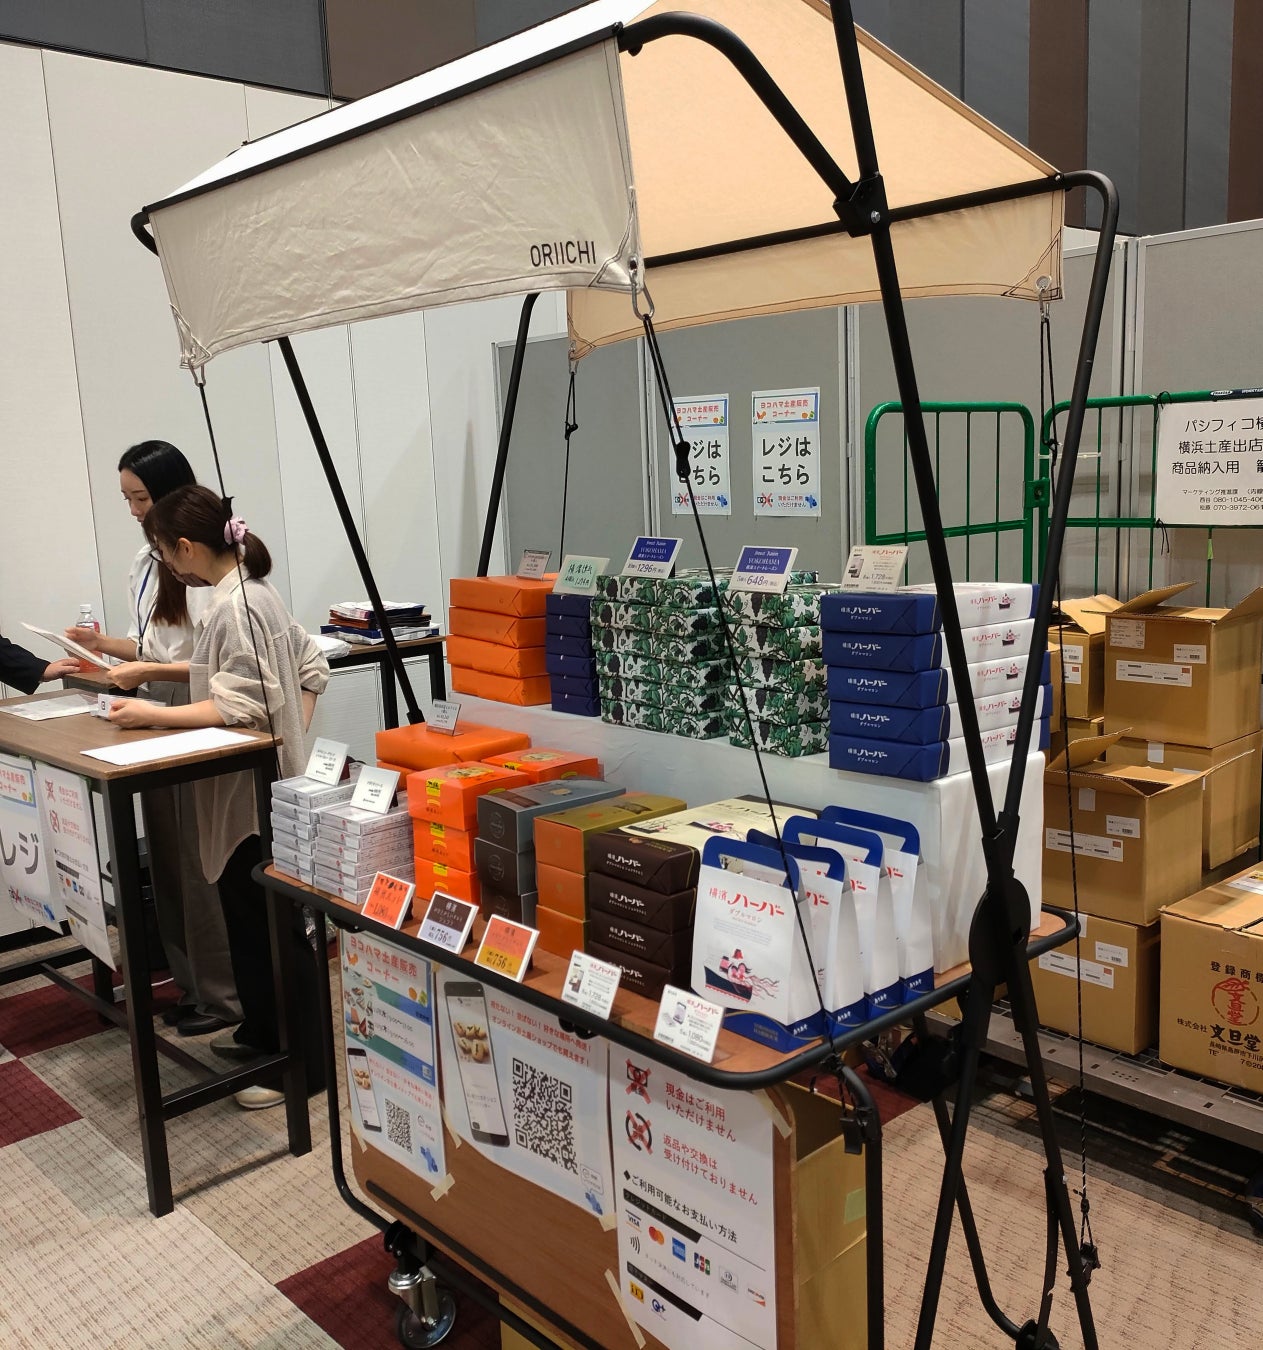 折畳式マルシェ用什器「ORIICHI」をパシフィコ横浜が正式採用